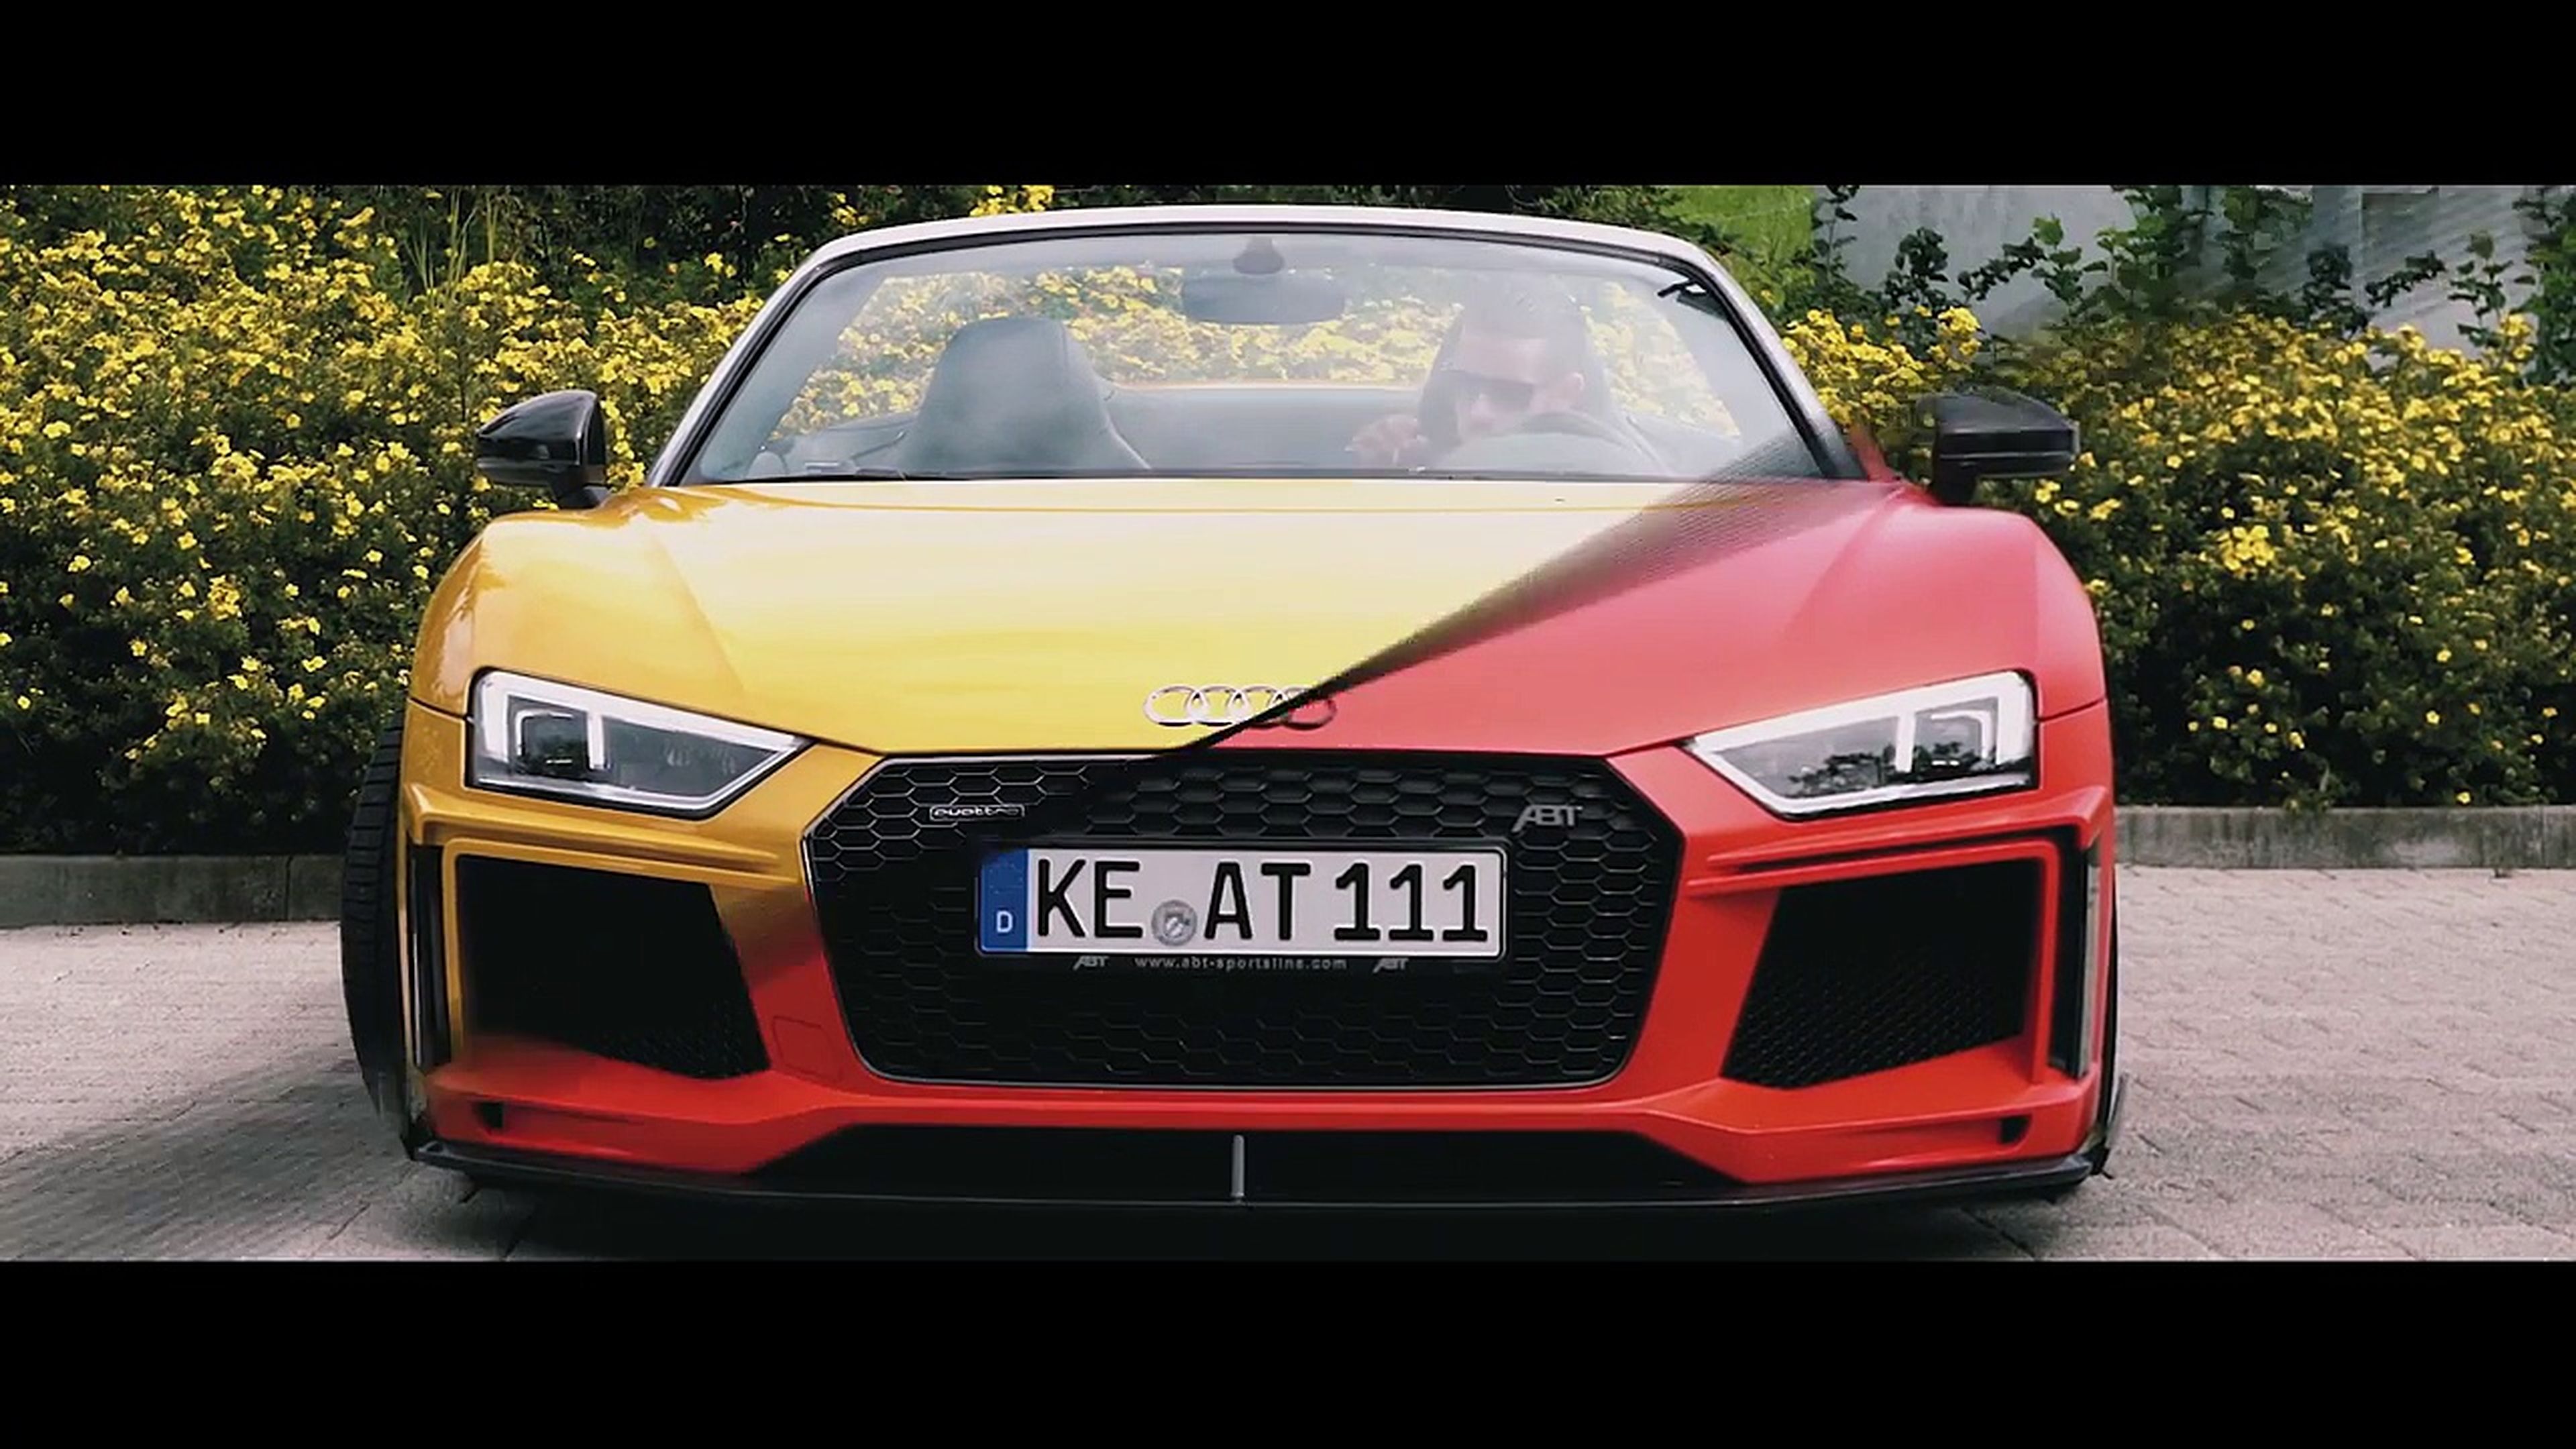 VÍDEO: ¿A fuego o de paseo? Elige tu ABT Audi R8 [TG]